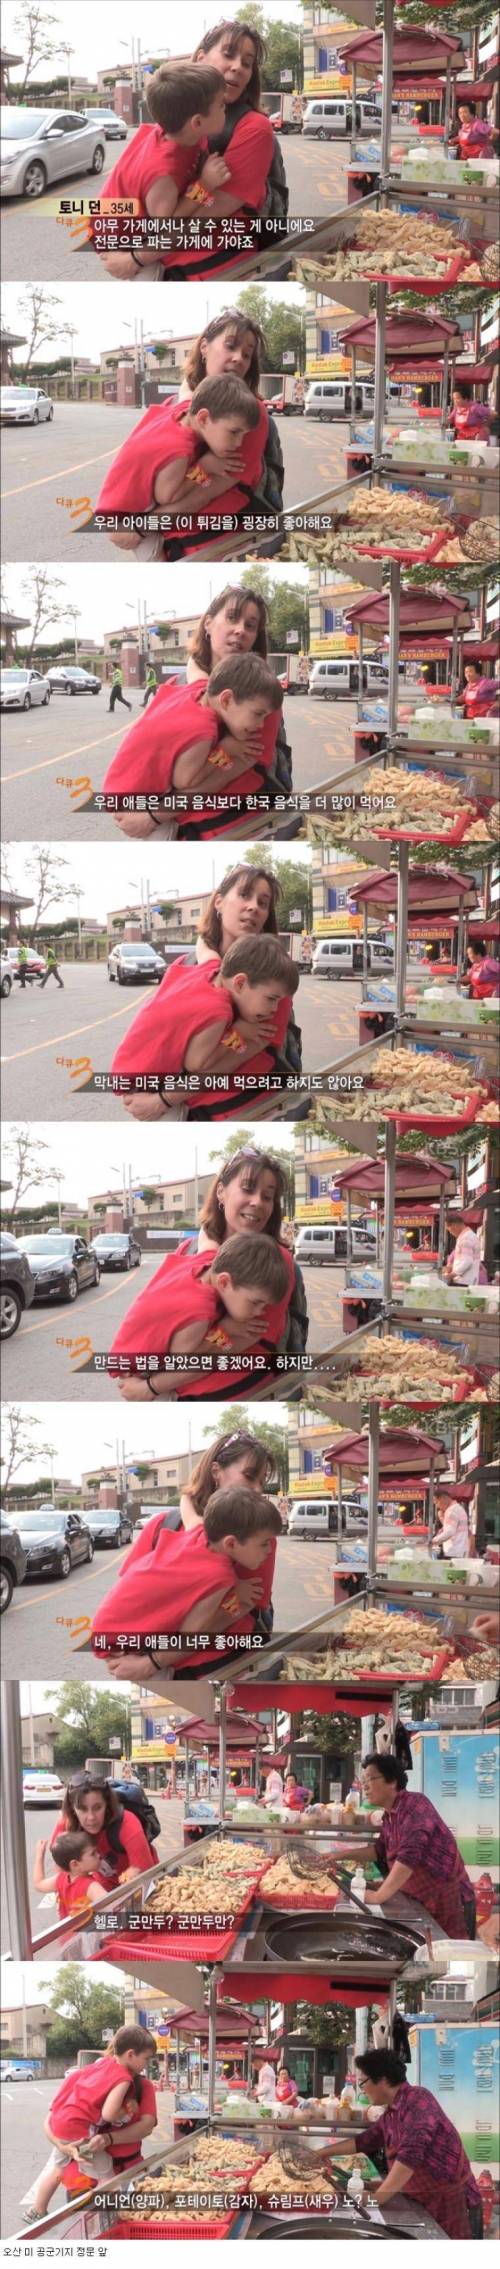 12 아이가 한국 음식만 먹어서 걱정이라는 미국인 엄마.jpg